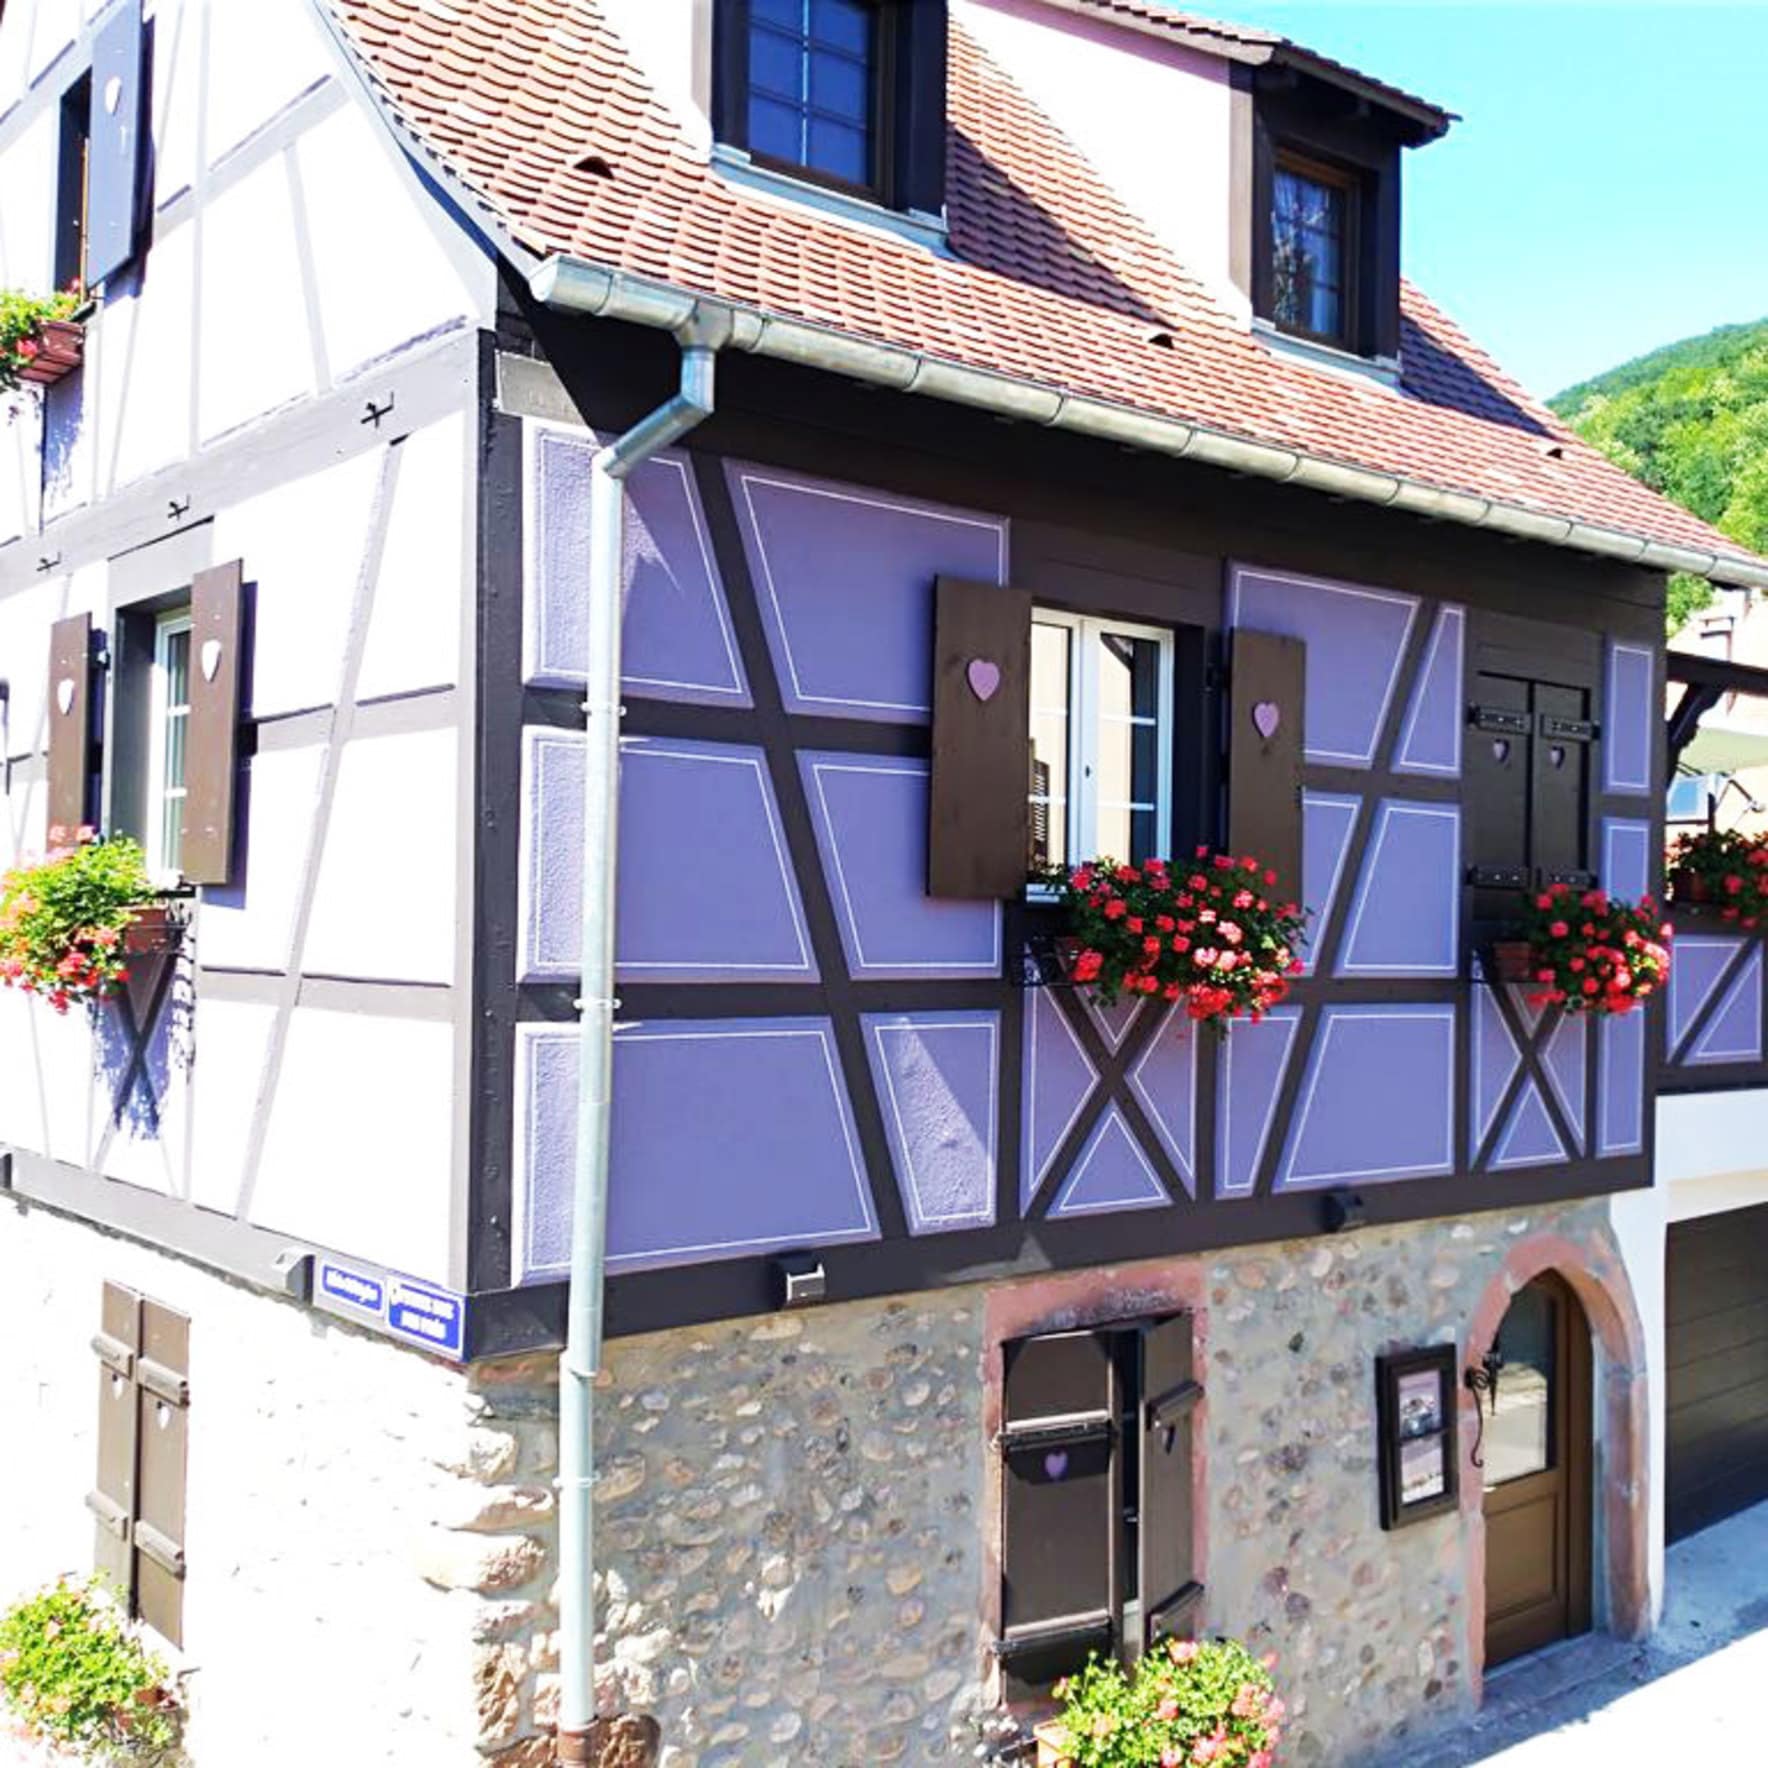 Location de vacances en Alsace : une maison typiquement alsacienne